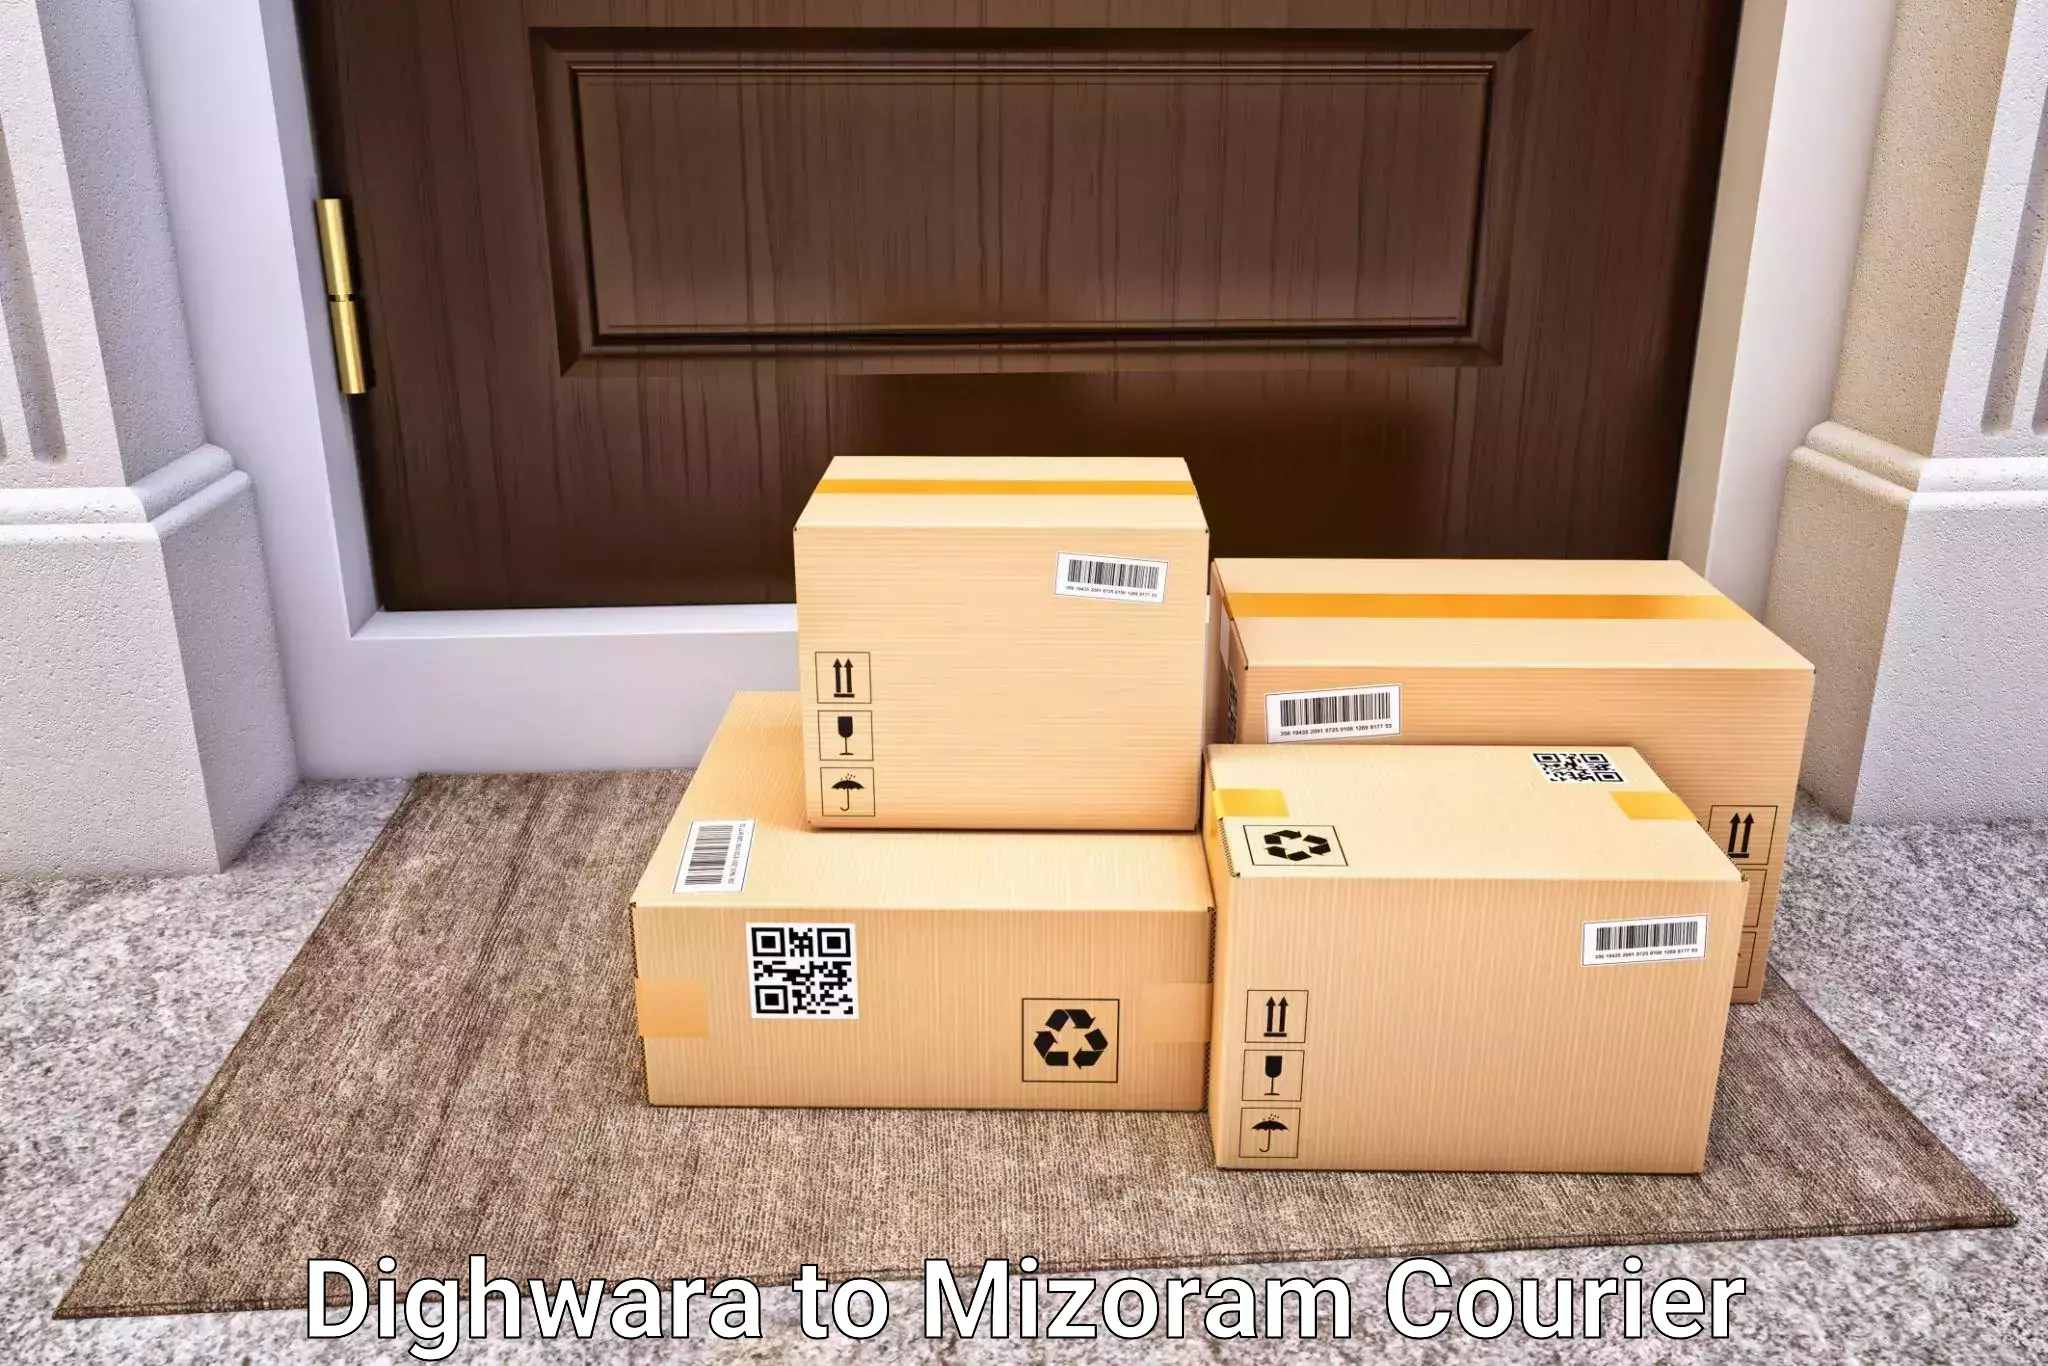 Hassle-free luggage shipping in Dighwara to Mizoram